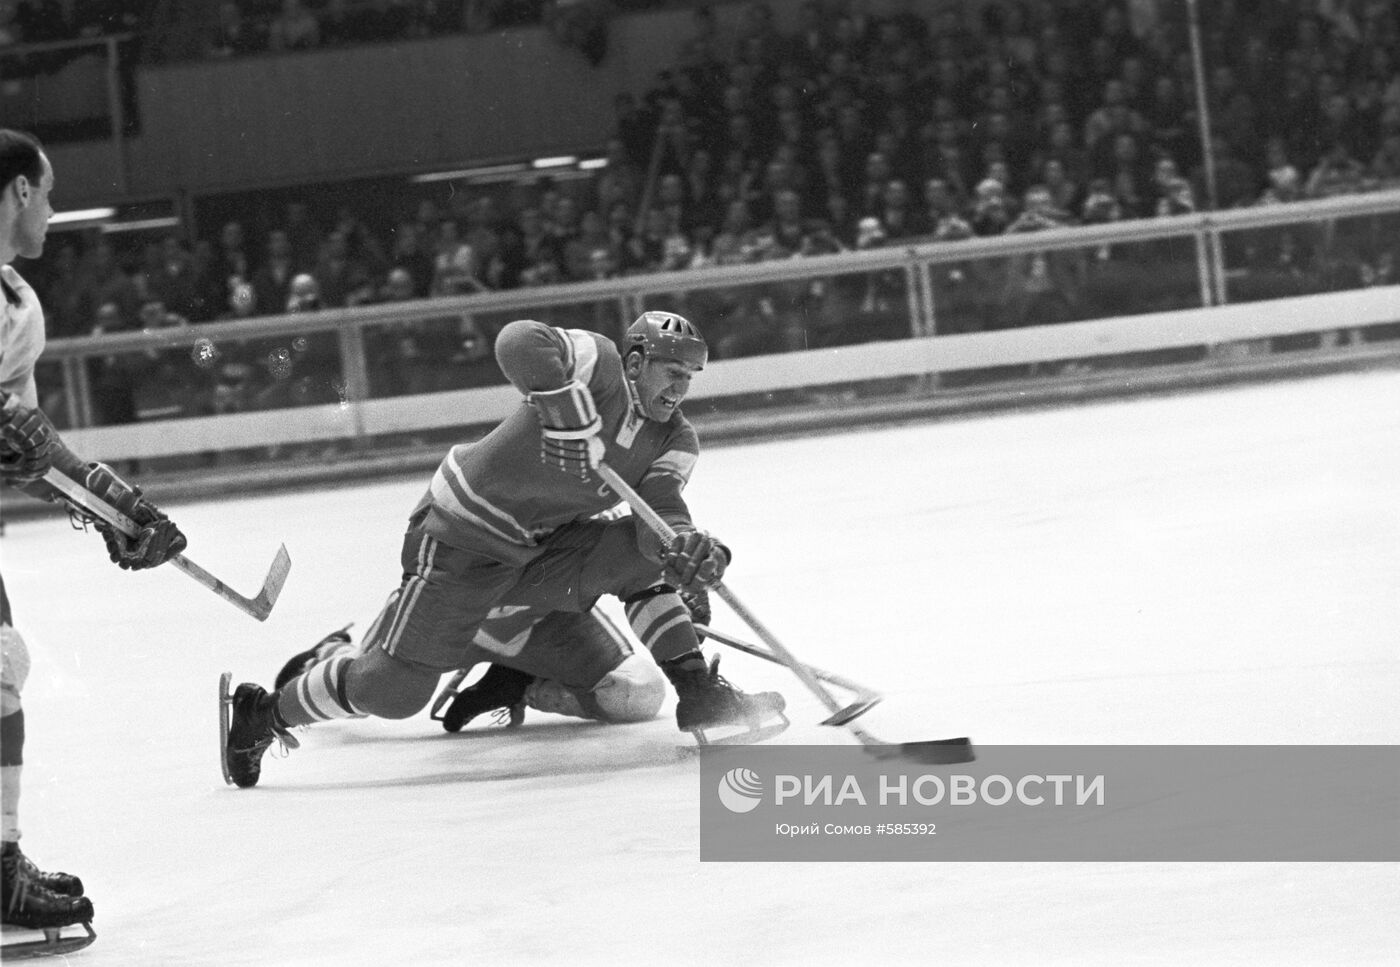 Финальный матч по хоккею между командами СССР и Чехословакией